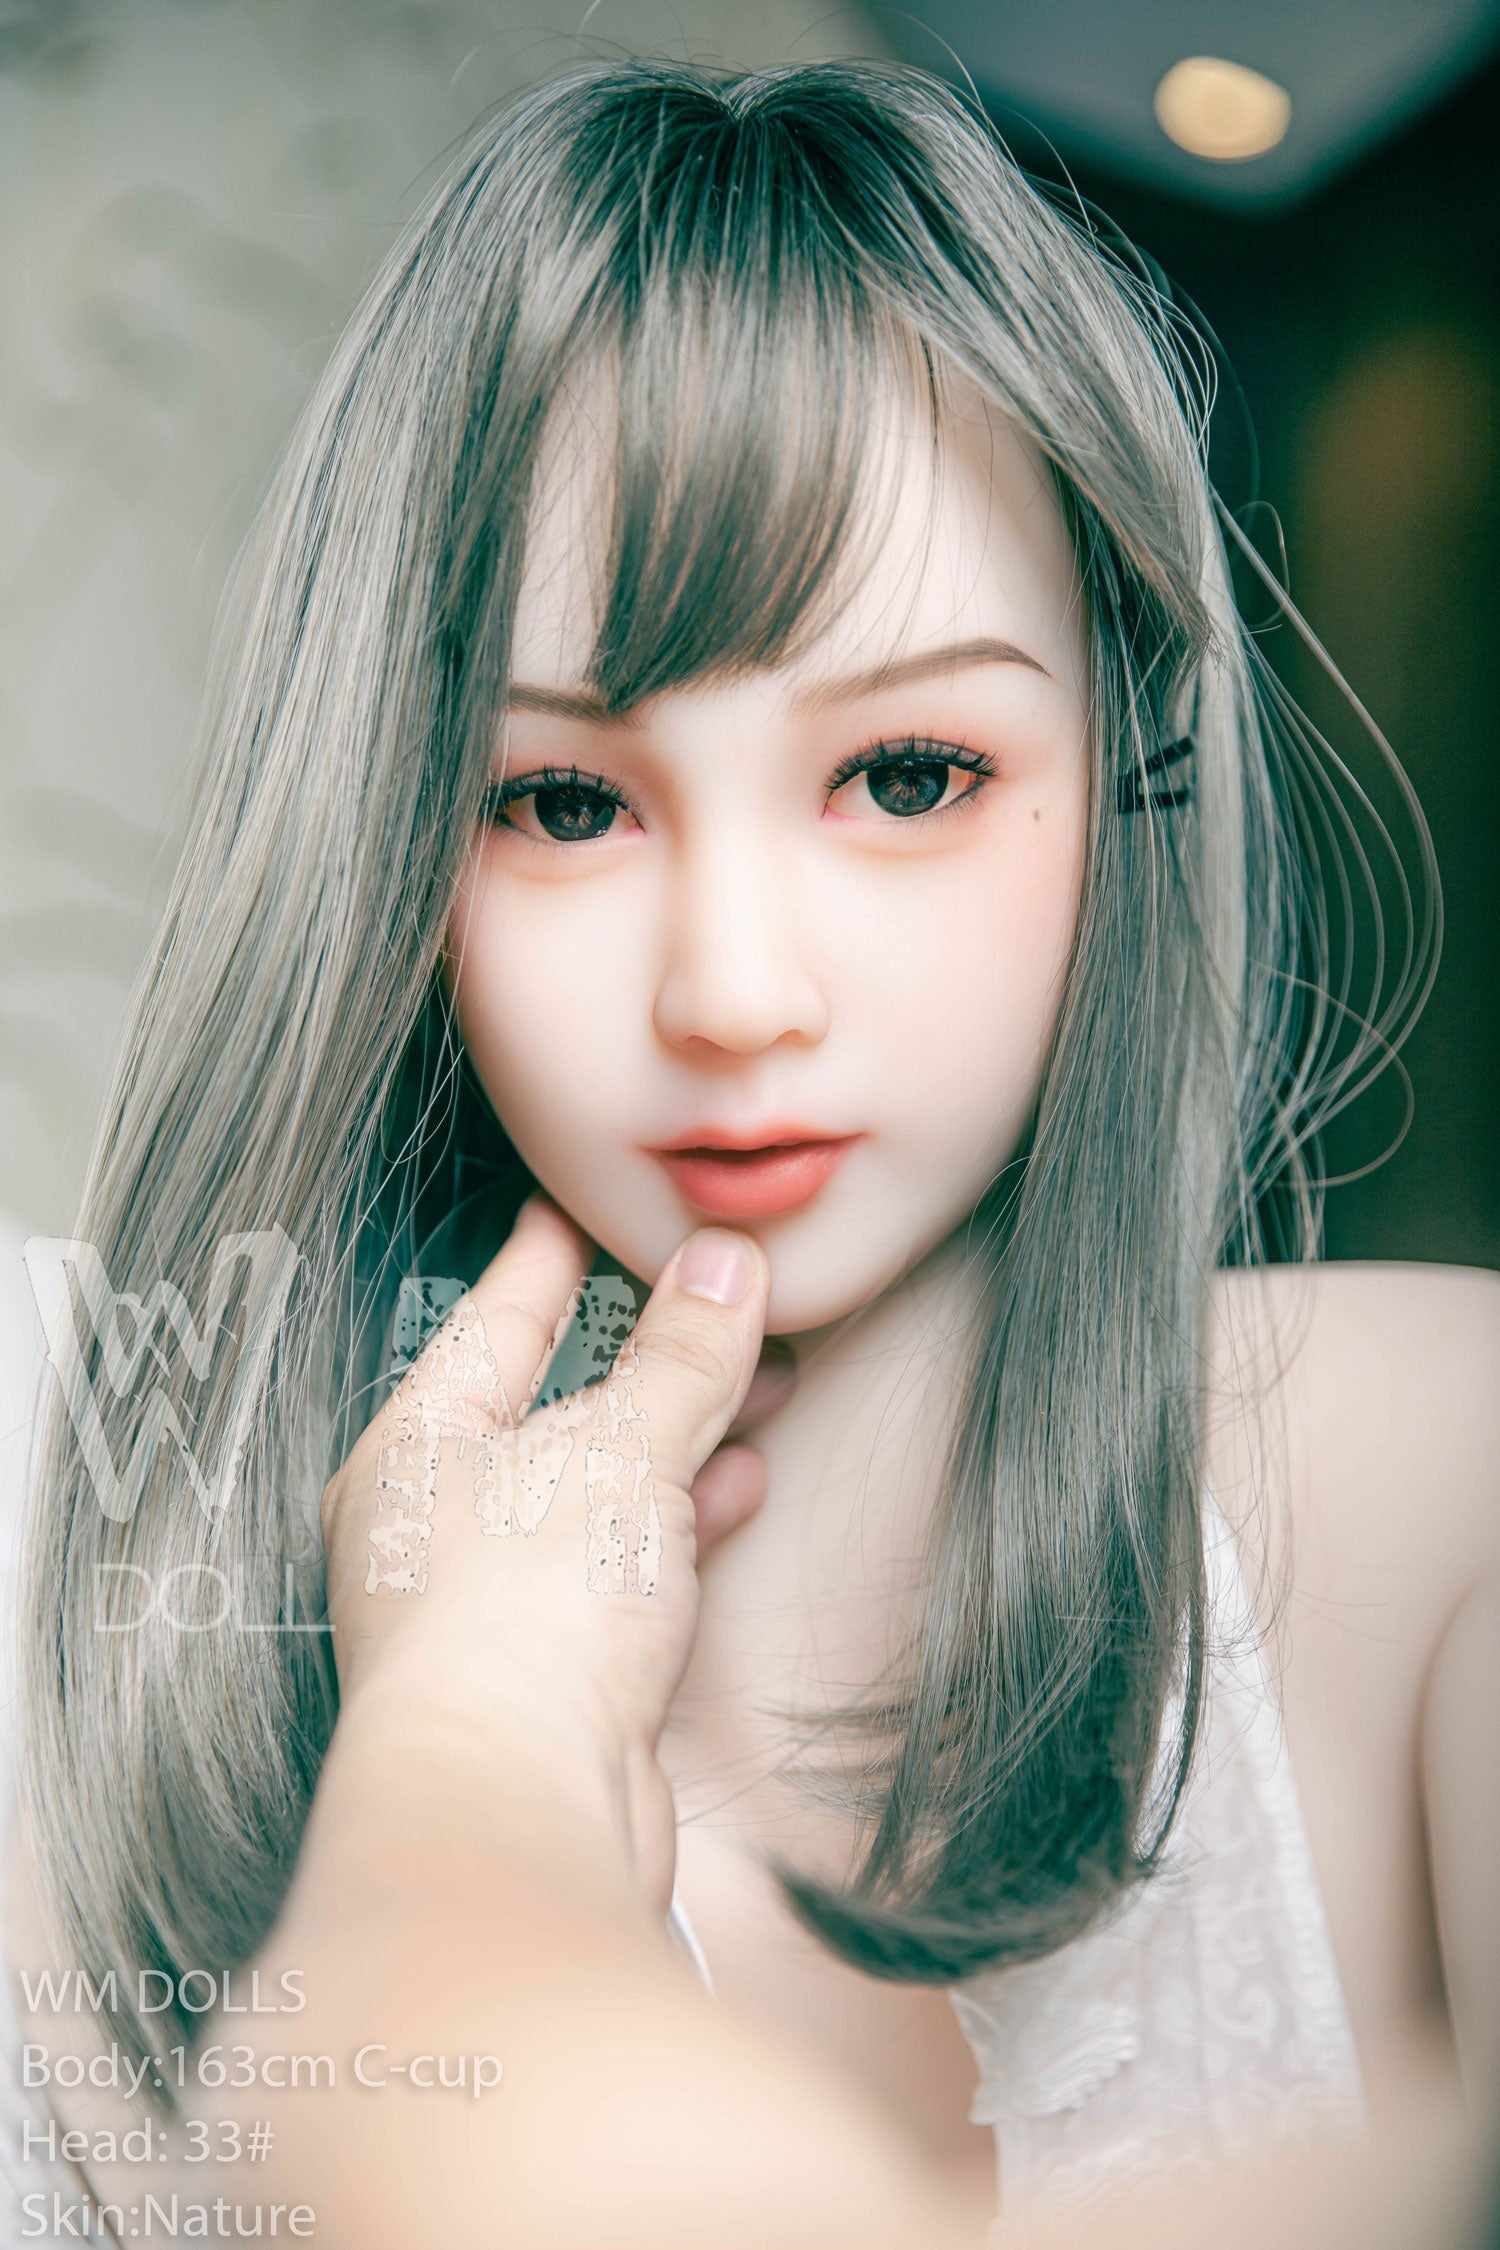 WM Doll 163 cm C Hybrid - Arya | Buy Sex Dolls at DOLLS ACTUALLY